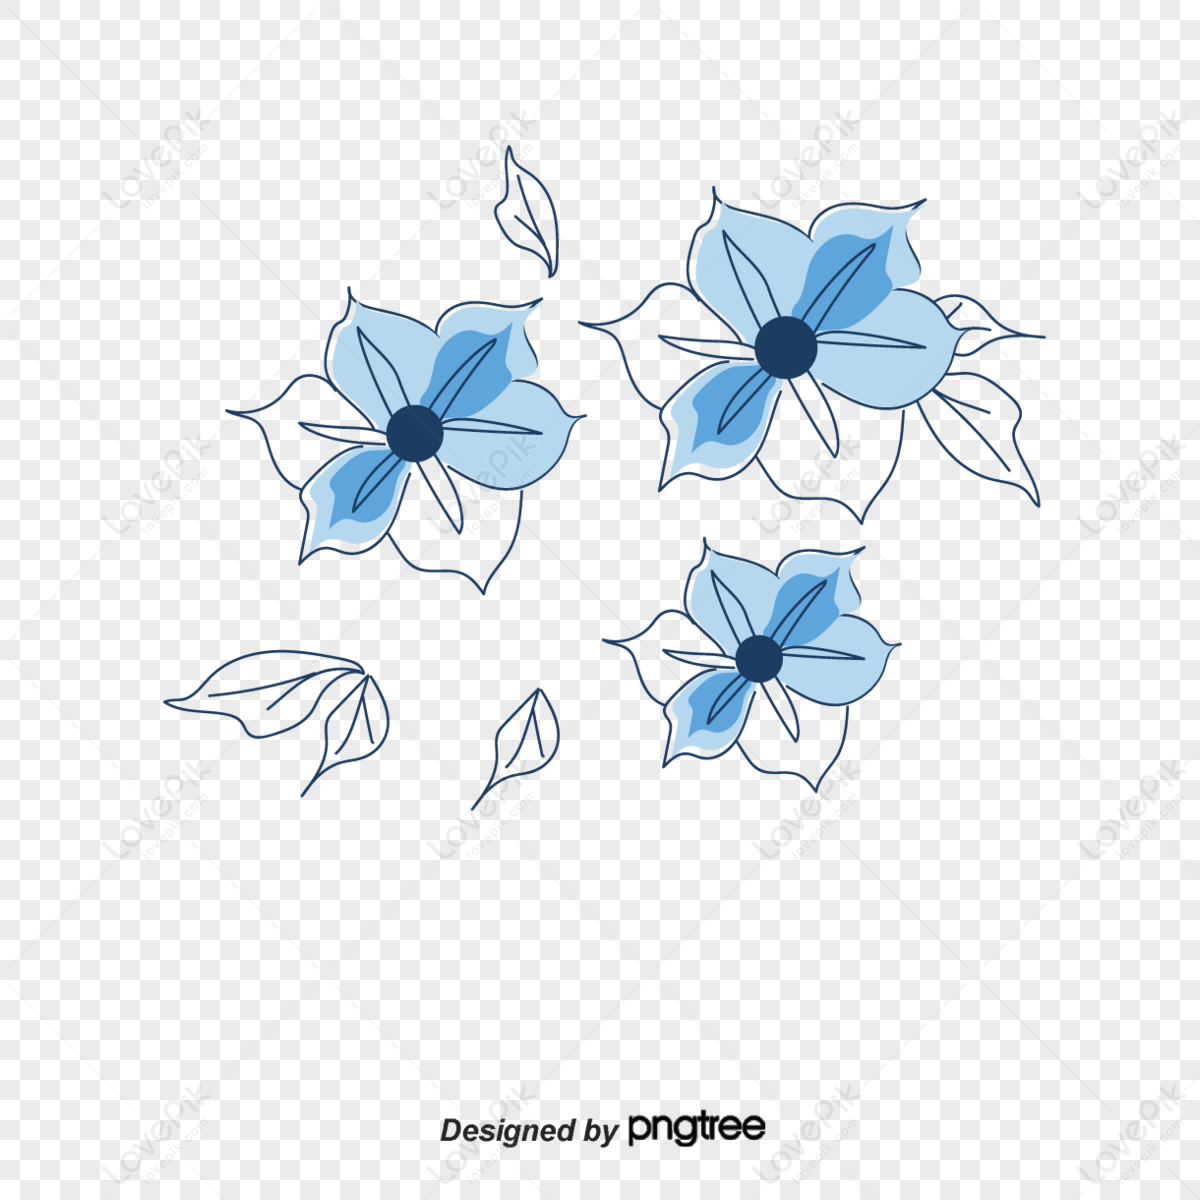 Blue Tribal Flower by LittleMissSquish on DeviantArt